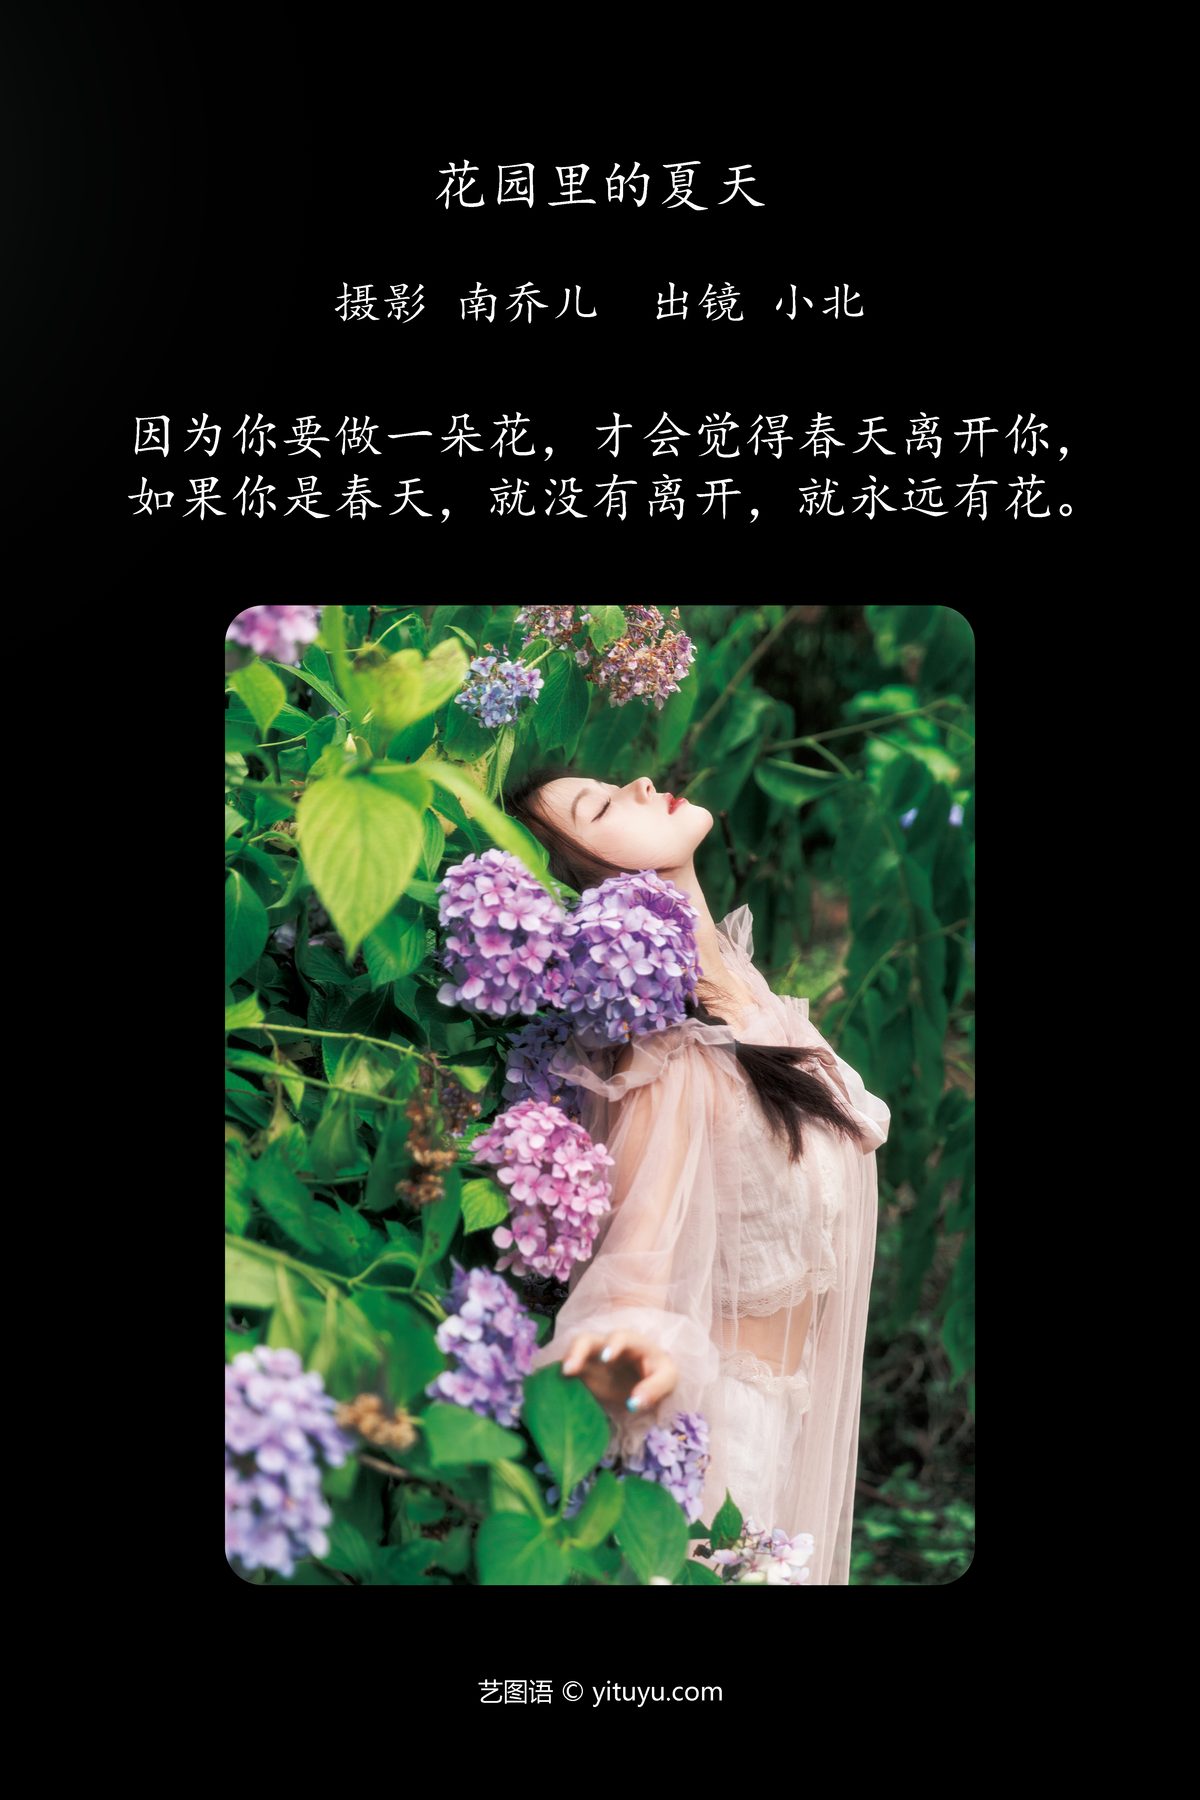 YiTuYu艺图语 Vol 4942 Xiao Bei 0002 5227528516.jpg